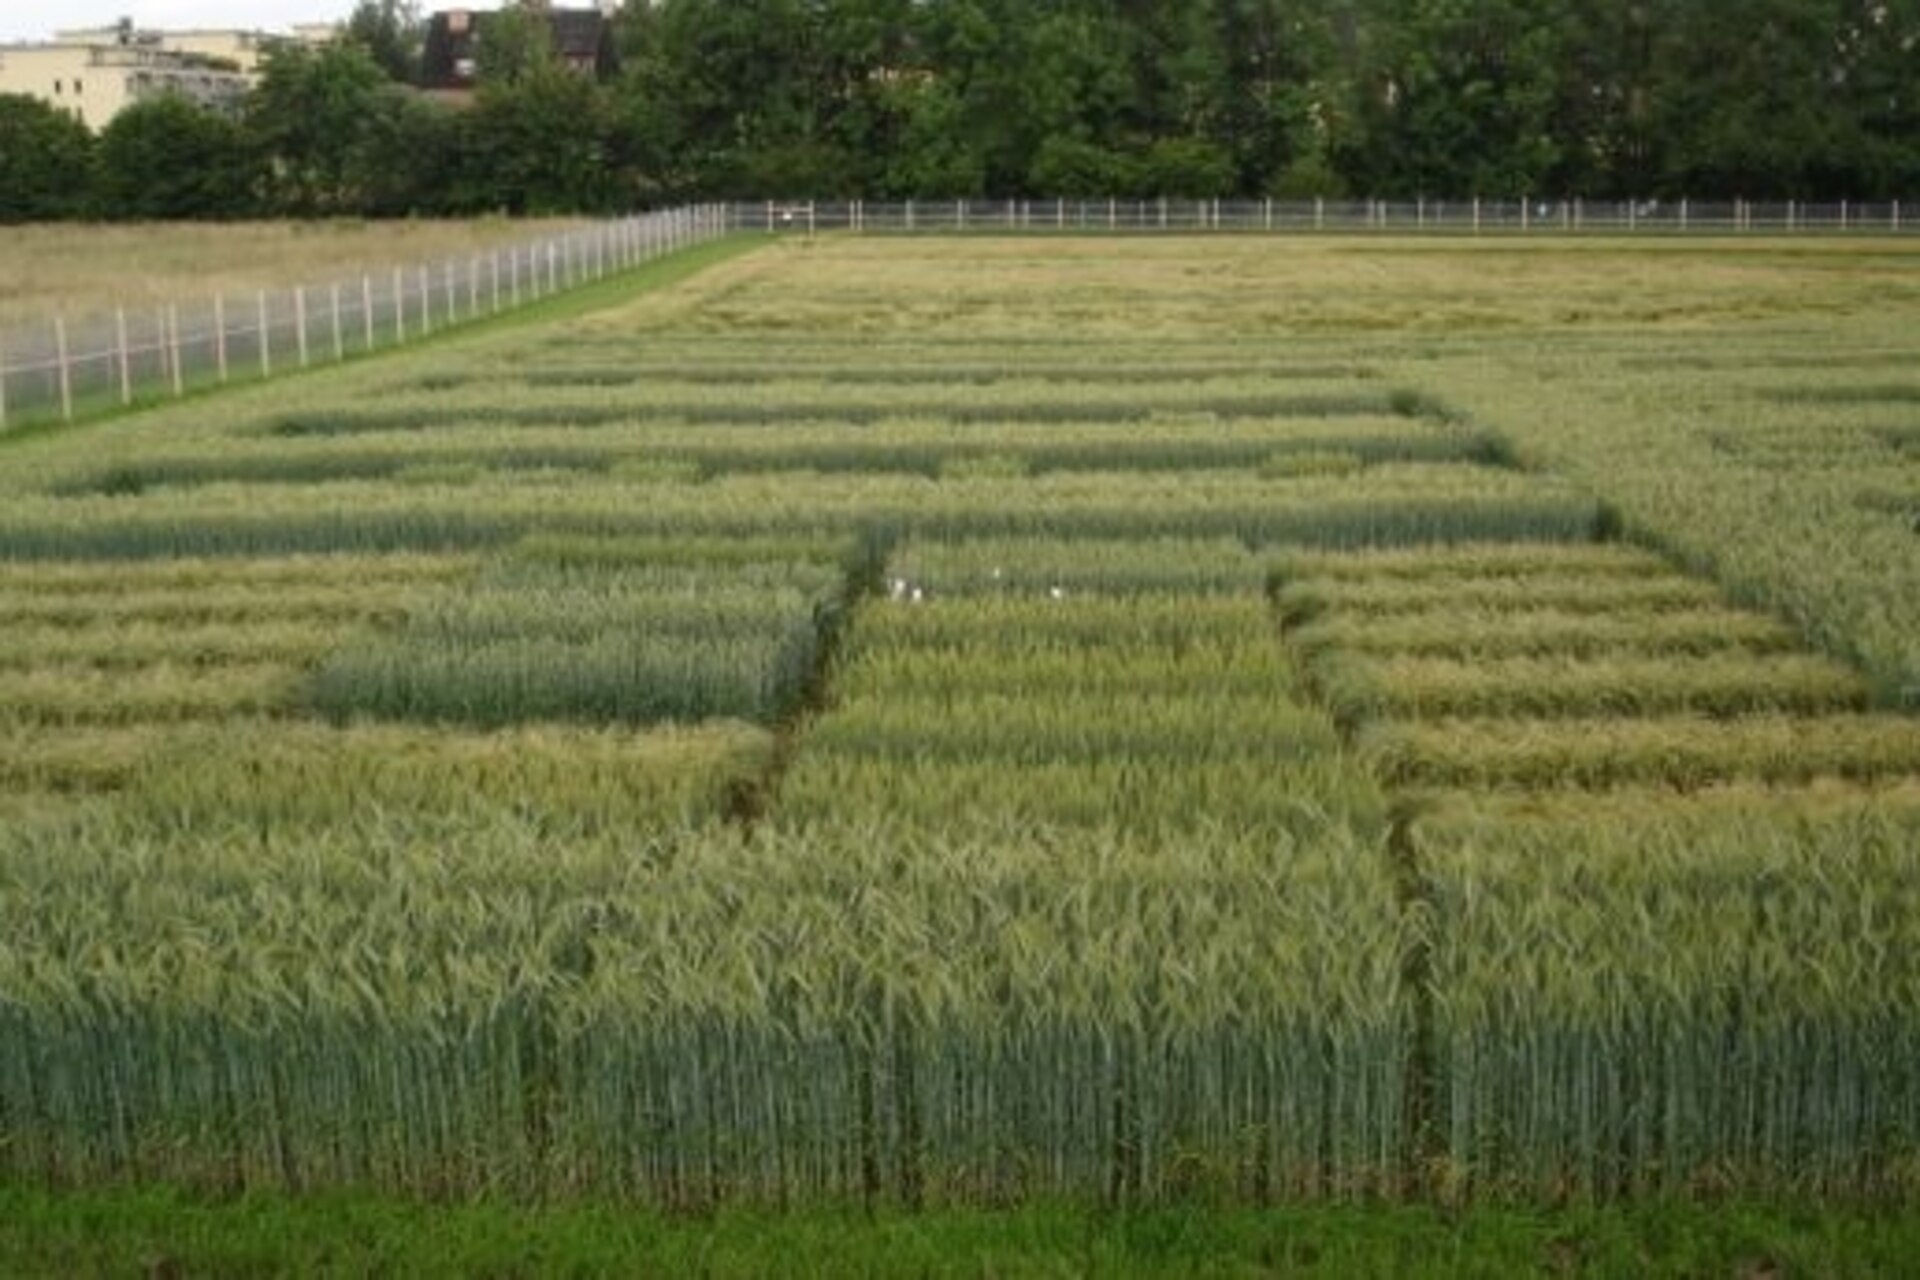 Ordi modificat genèticament: Agroscope adquirirà coneixements durant més de tres anys sobre el comportament de les plantes en camp obert al lloc de Reckenholz (Zuric) amb autorització de l'Oficina Federal de Medi Ambient